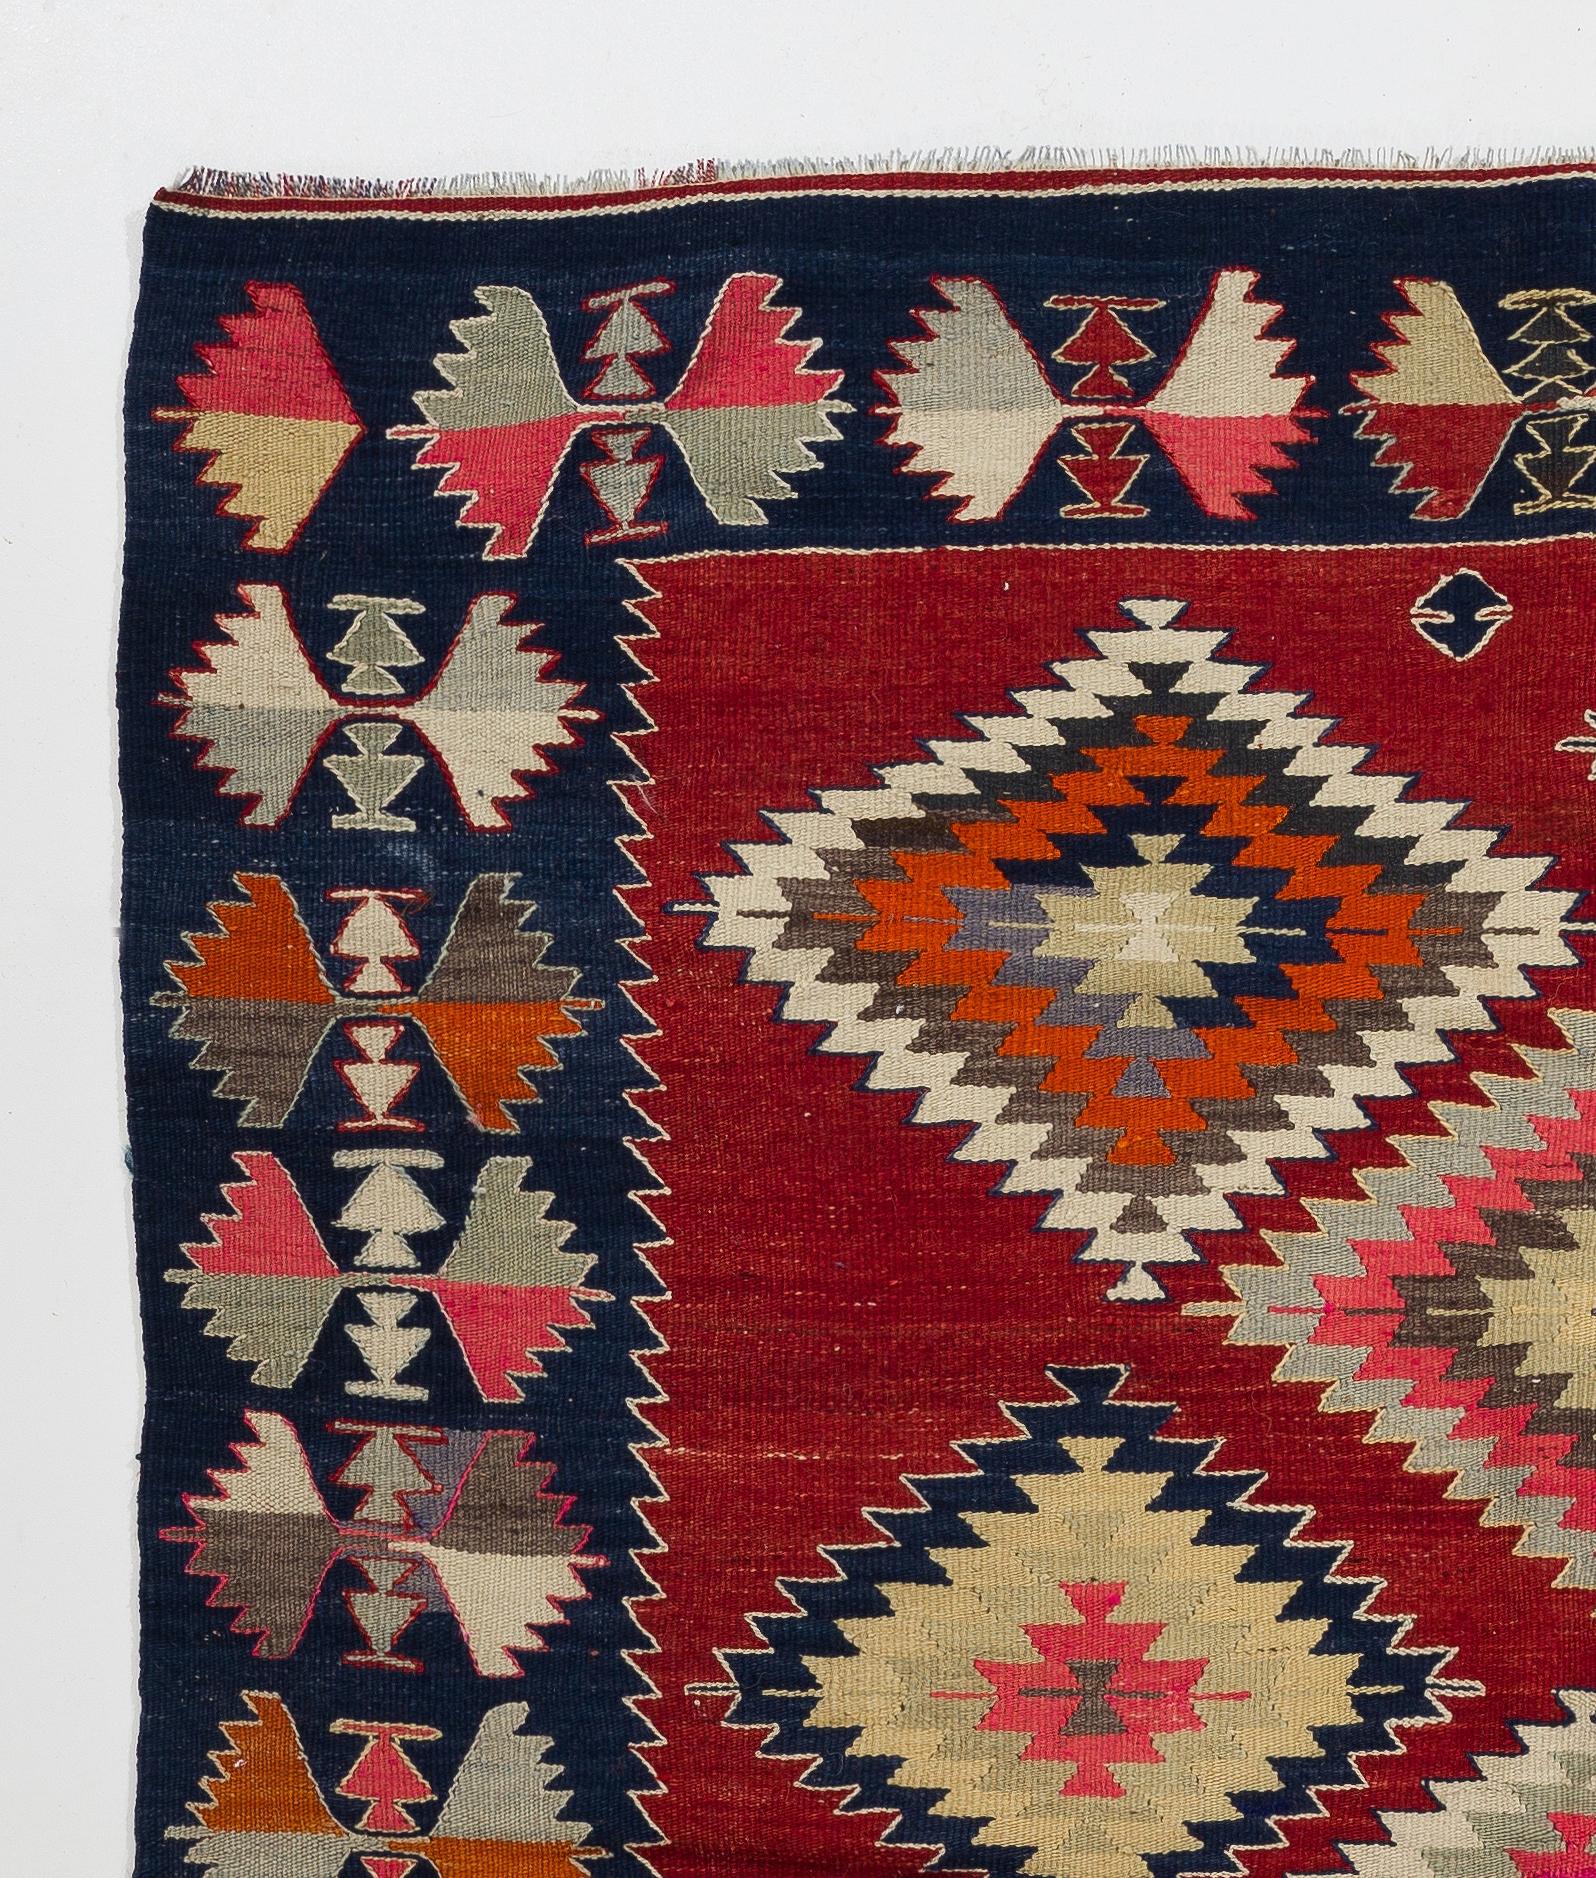 Un Rug & Kilim (tapis tissé à plat) turc coloré en très bon état d'origine. 100% laine. Mesures : 5.8 x 6.8 Ft.

Ce magnifique Sage présente des motifs en forme de diamants imbriqués les uns dans les autres, flottant librement sur tout le champ dans